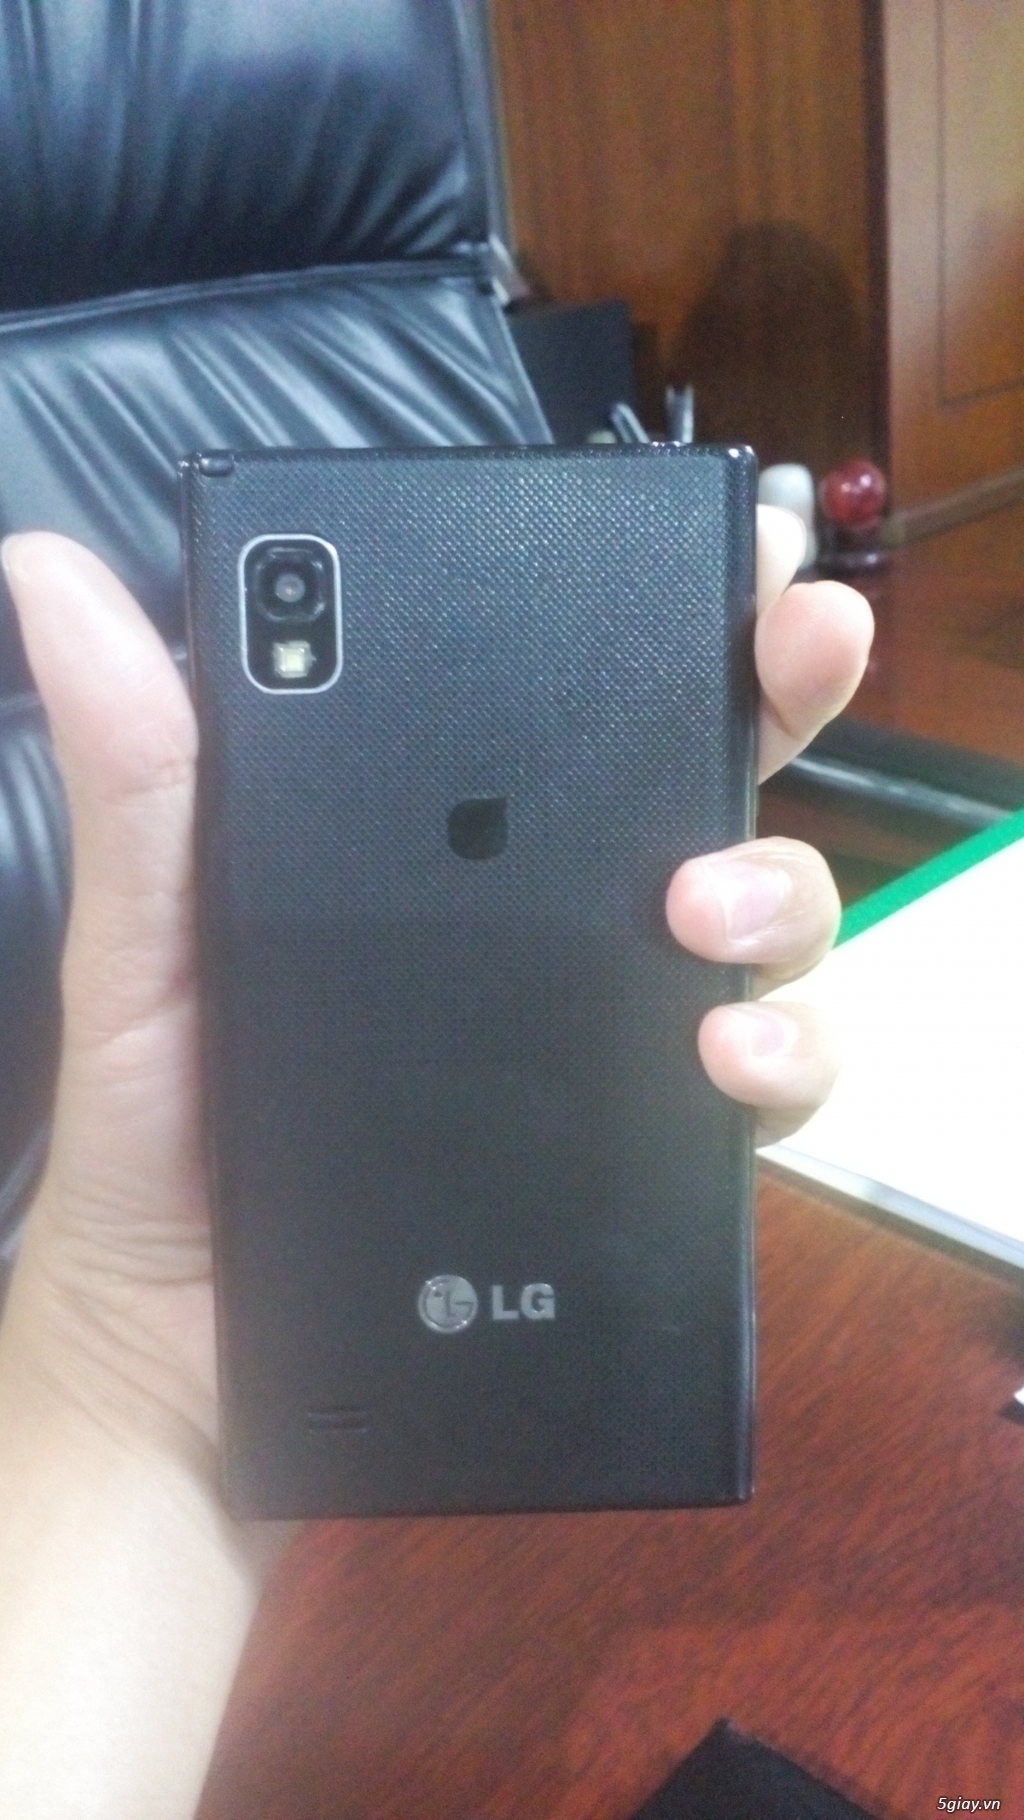 LG F160K (LG LTE2) cũ giá rẻ chỉ 700k -  Liên hệ Đăng: 0912.324.696 - 3